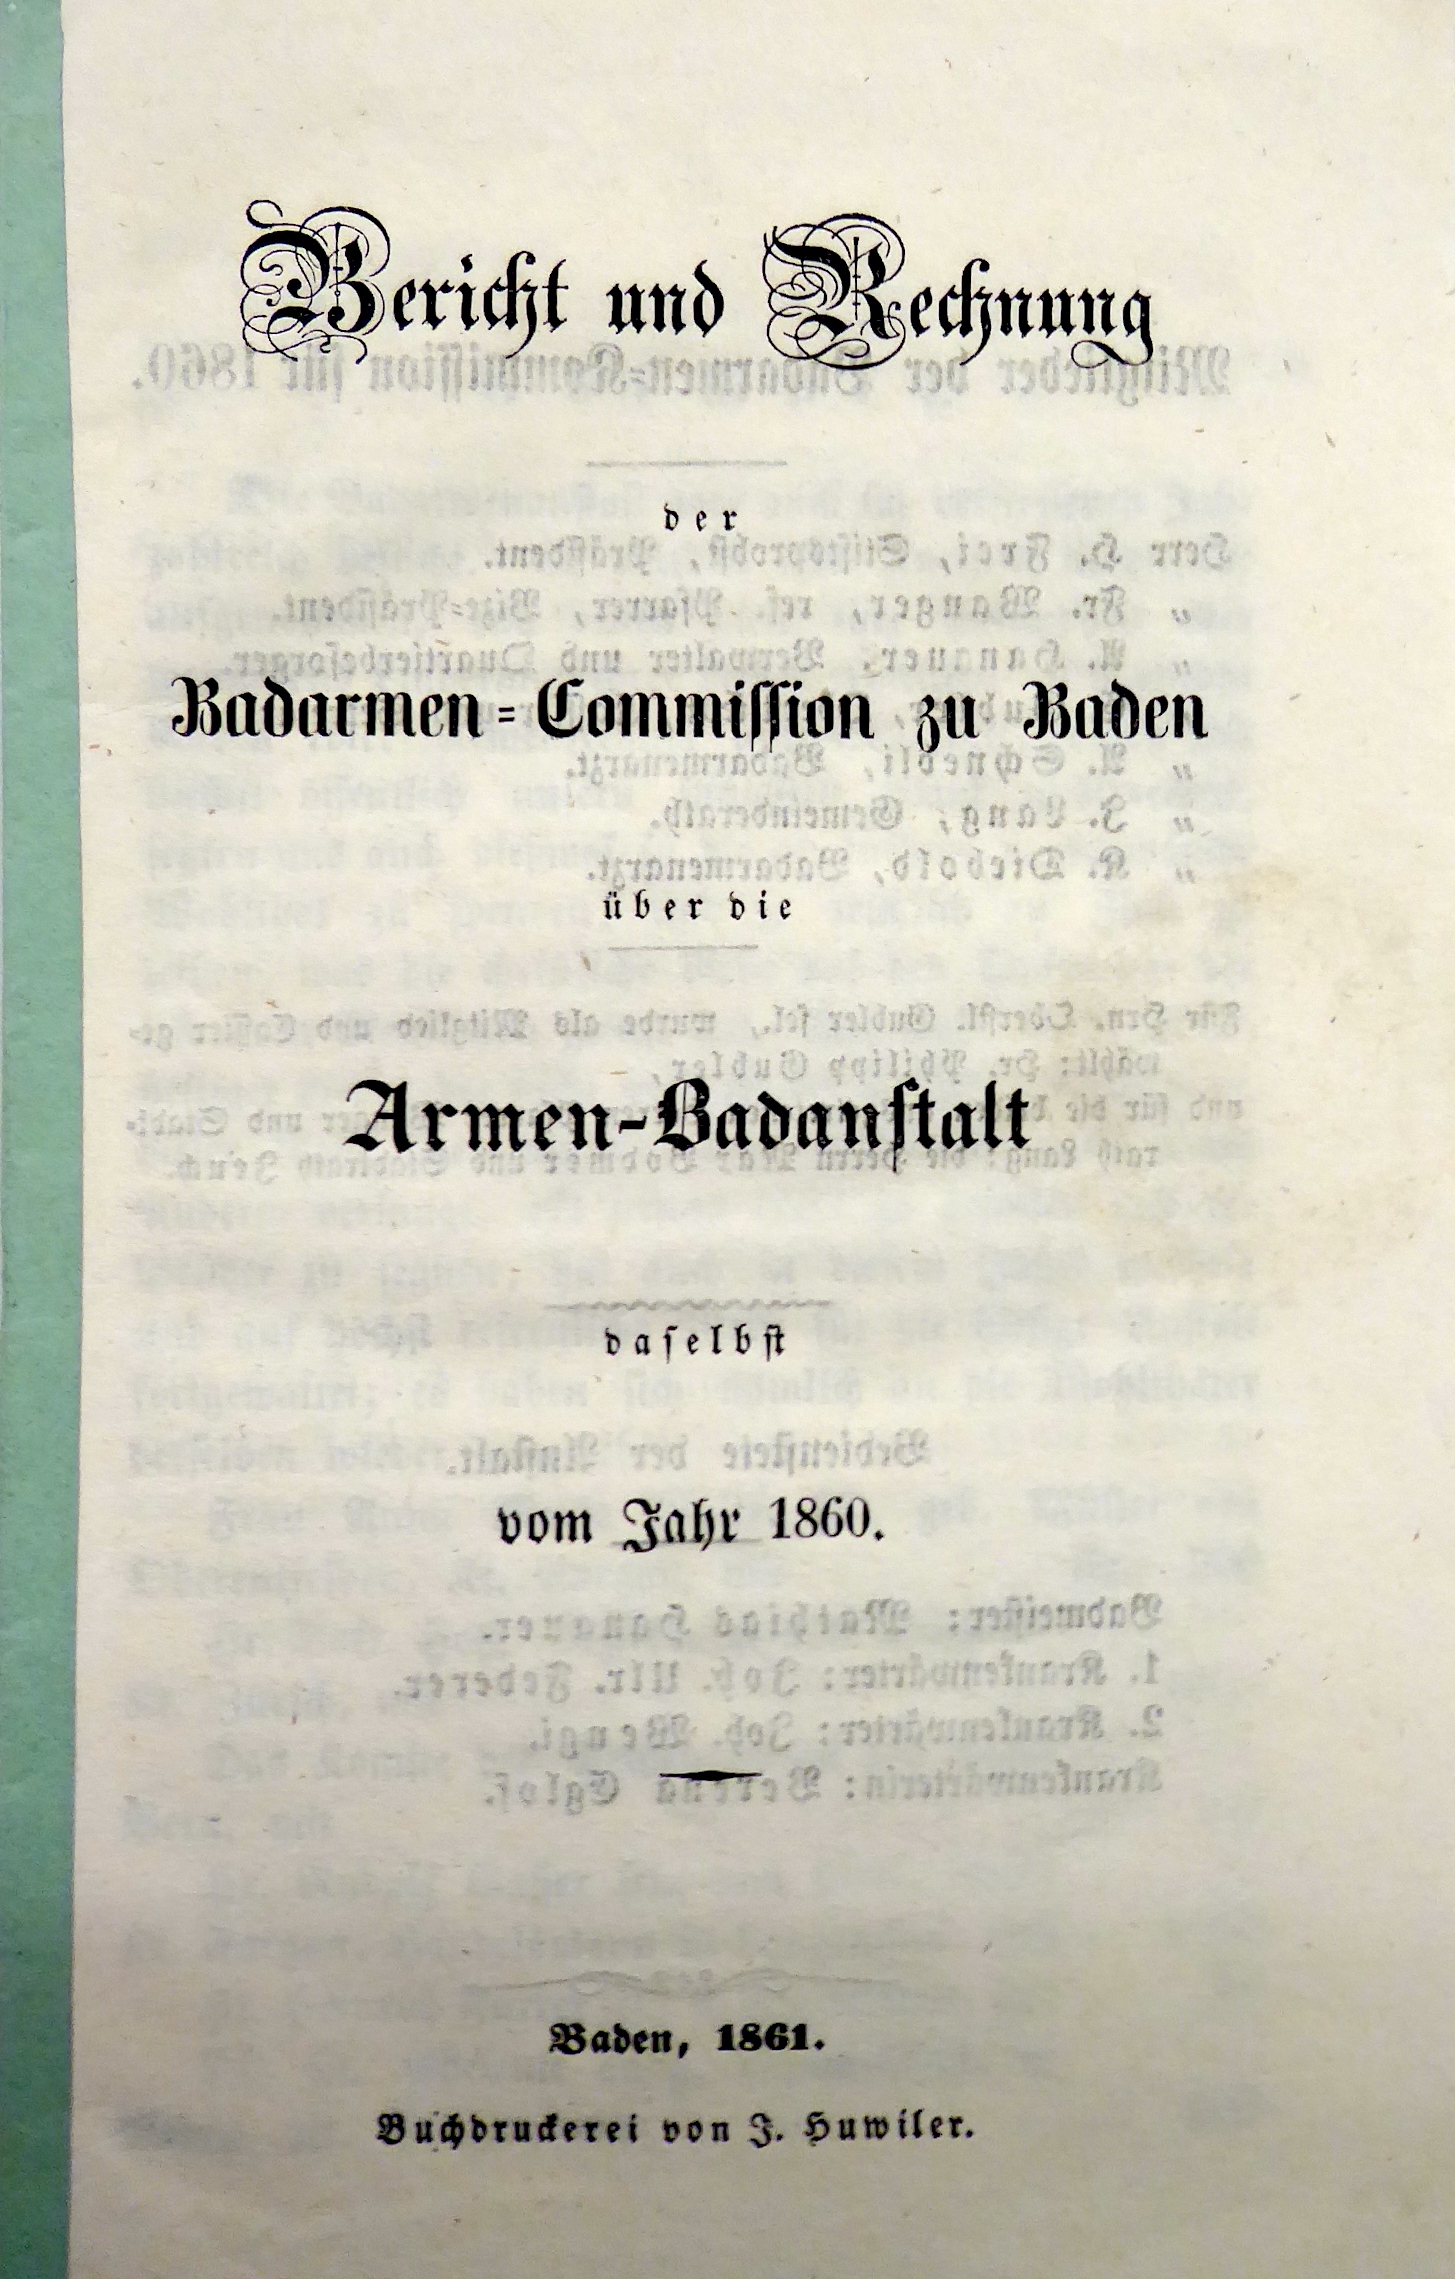 Bericht der Badarmen-Commission über die Armen-Badanstalt vom Jahr 1860